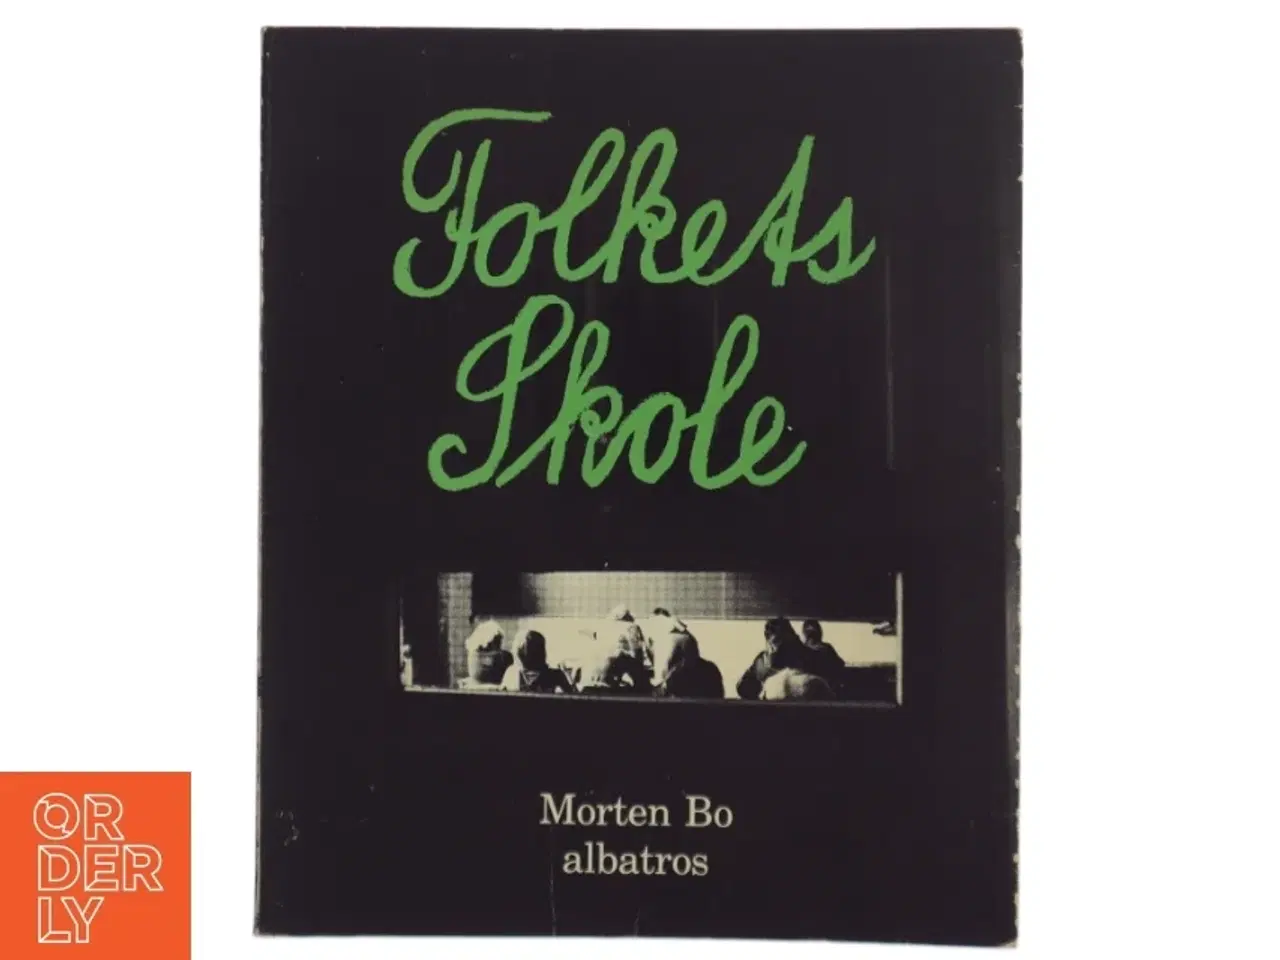 Billede 1 - Folkeskole bog af Morten Bo fra albatros